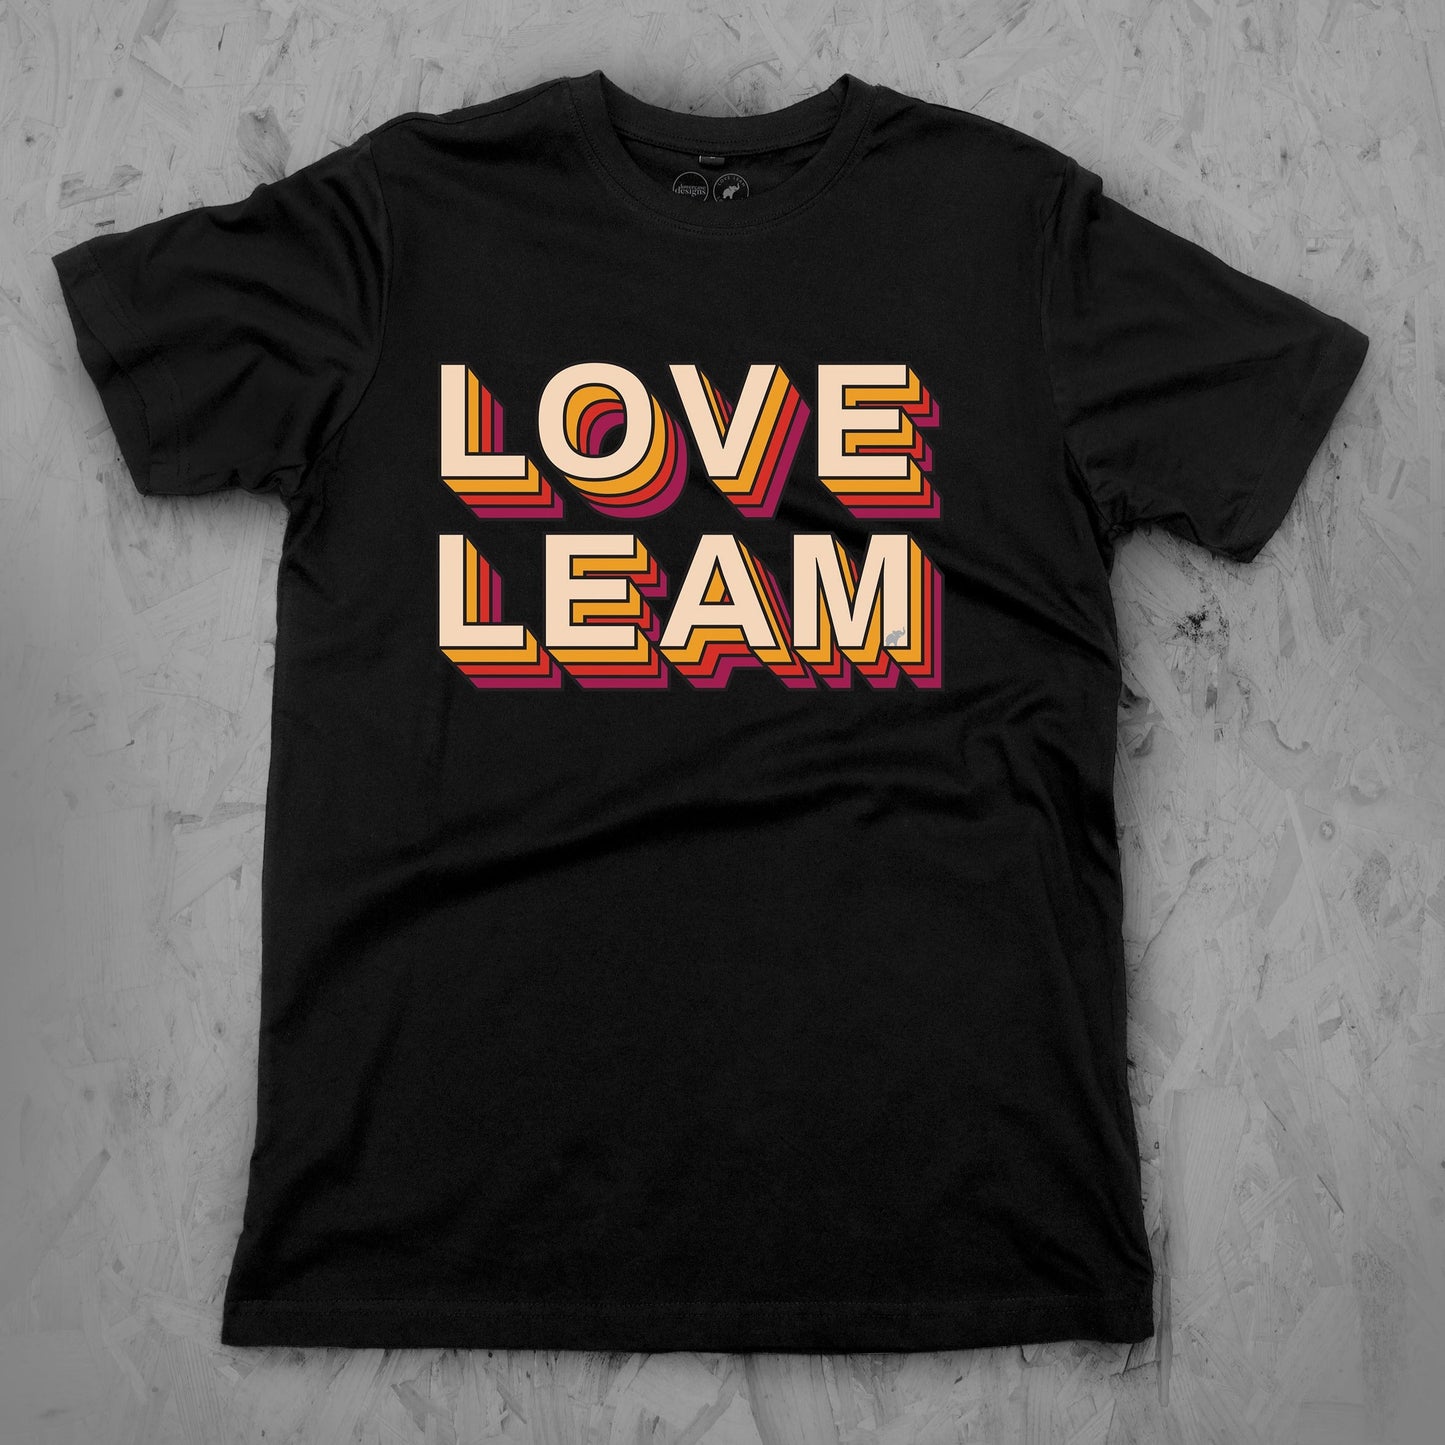 Love Leam 2 Tee Child's sizes 3-14 years